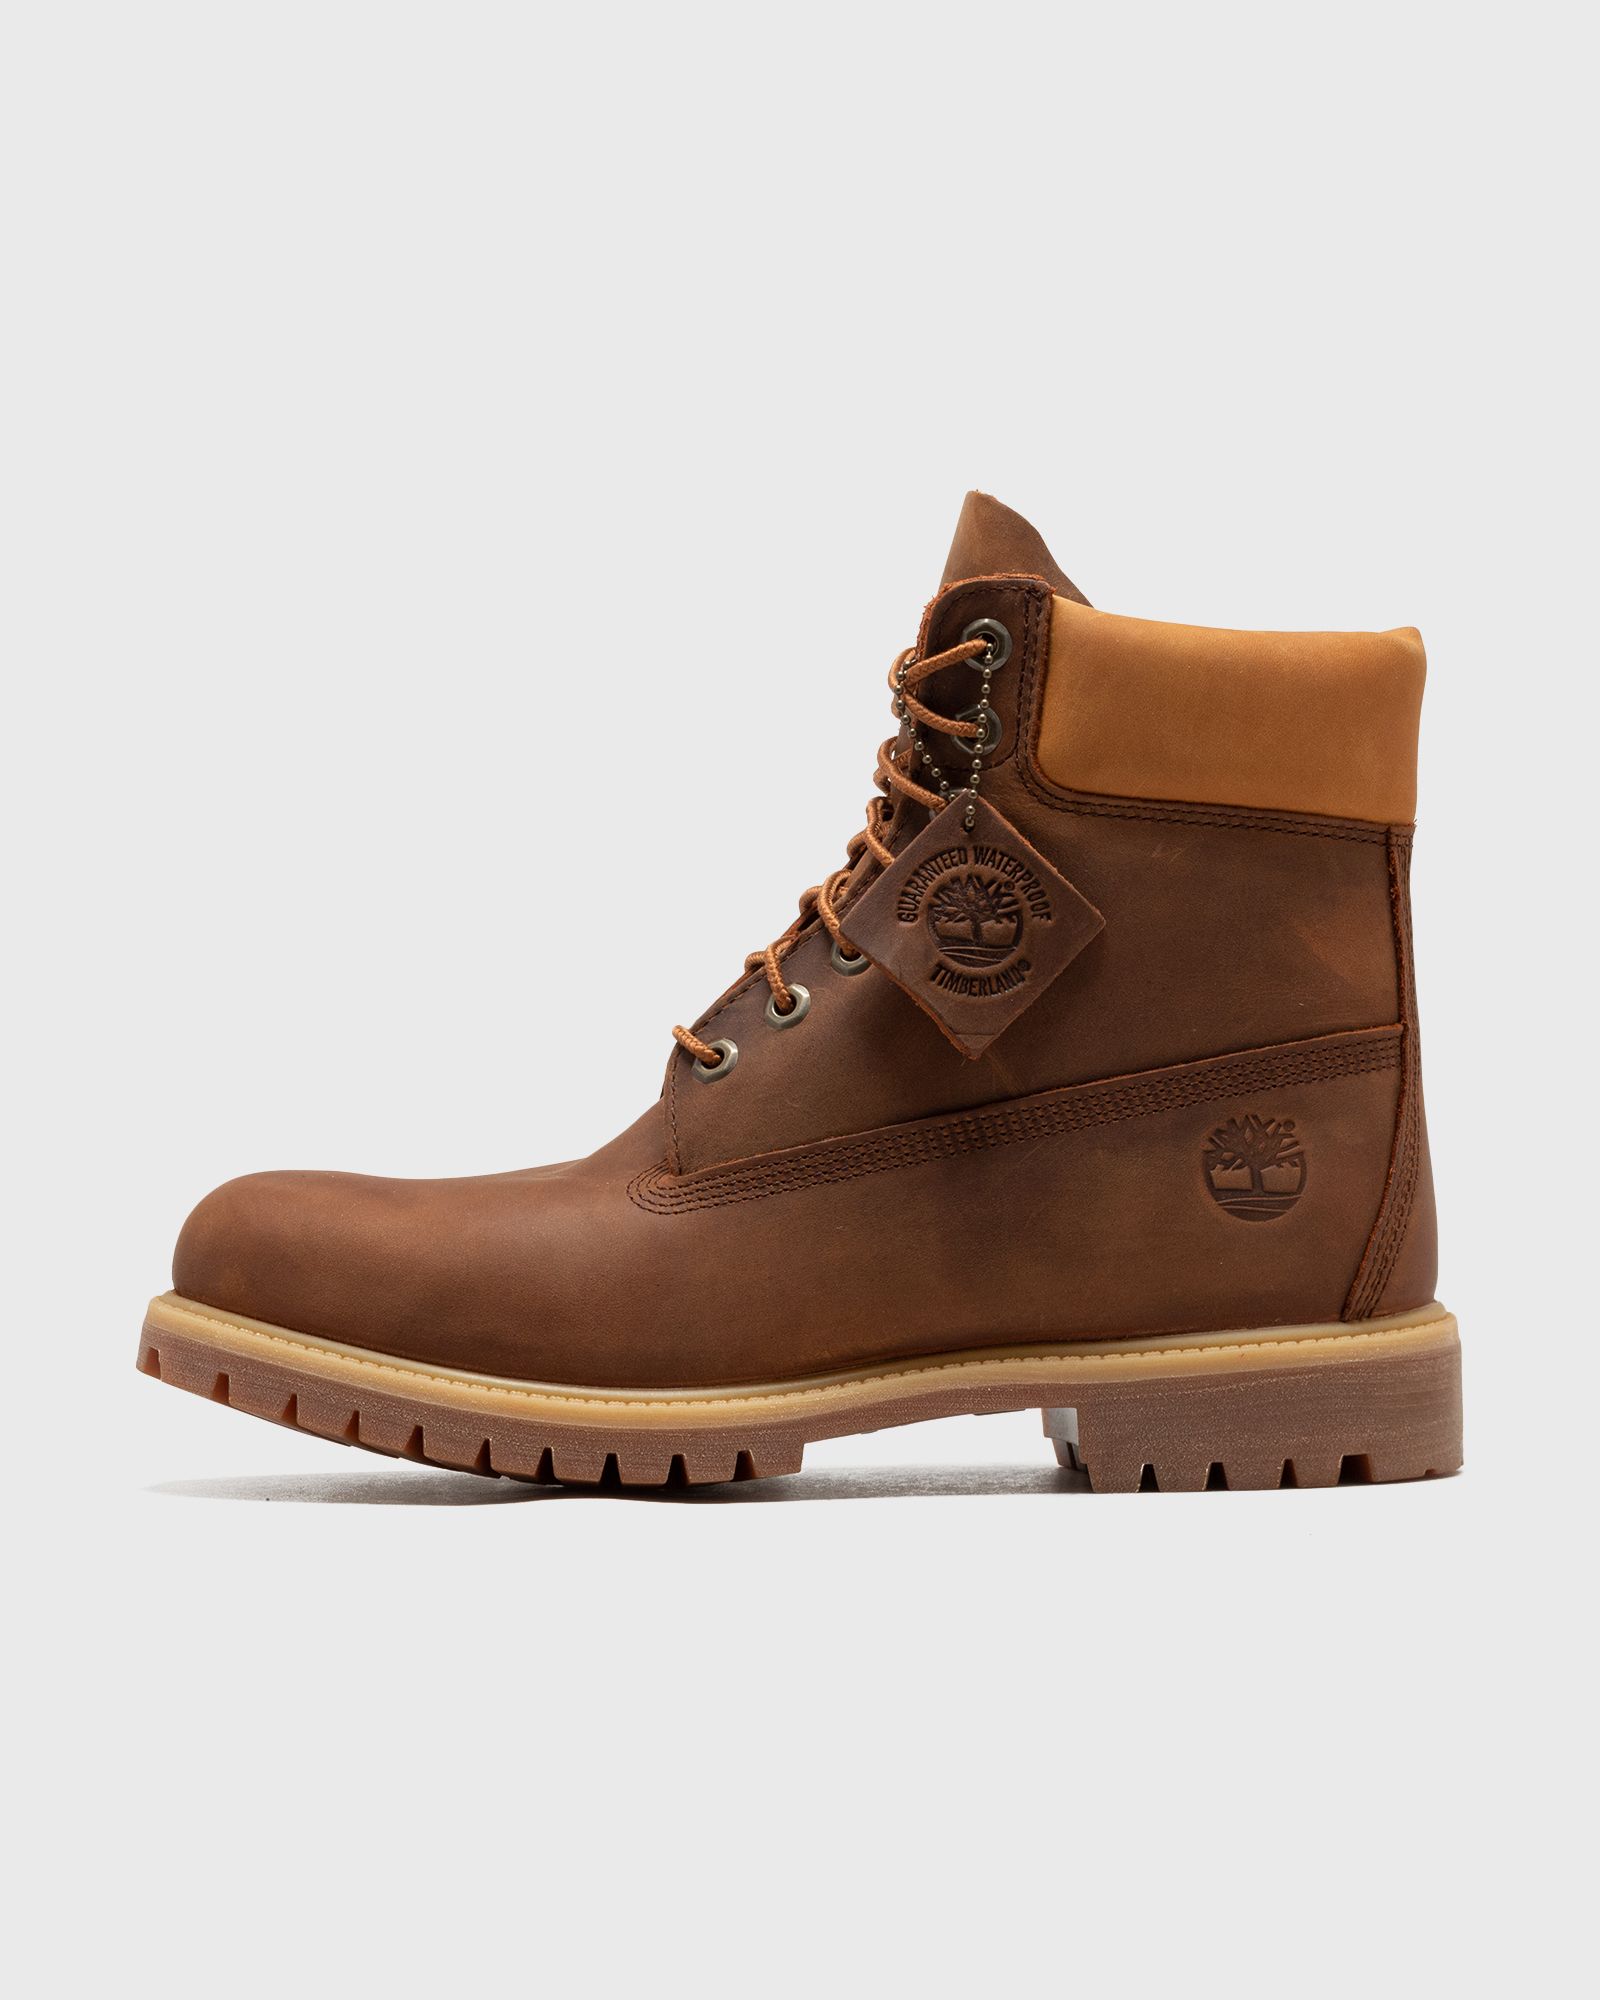 Timberland - 6 inch premium men boots brown in größe:45